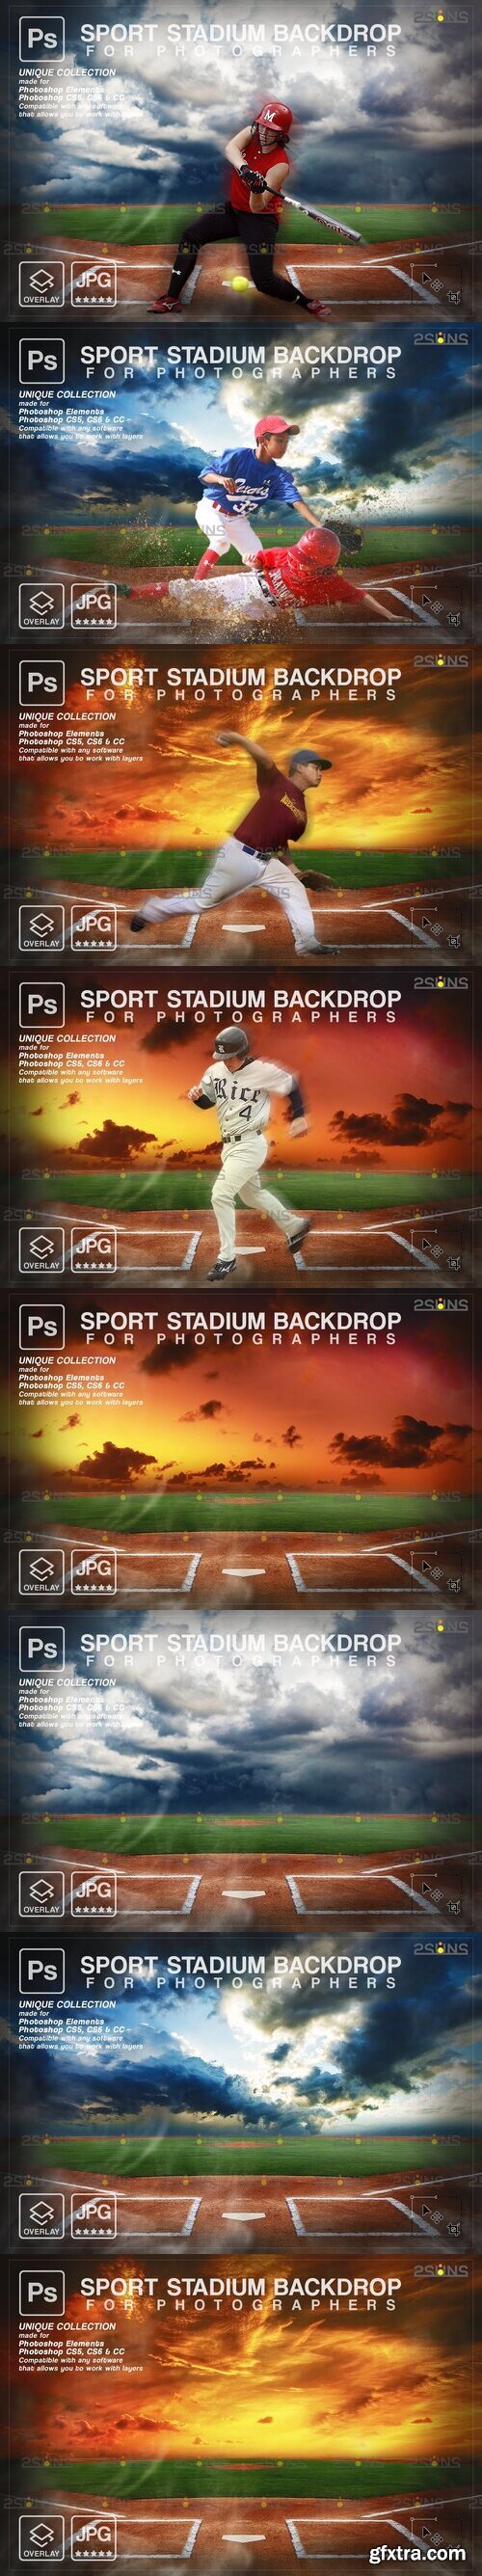 Backdrop Sports Digital vol2